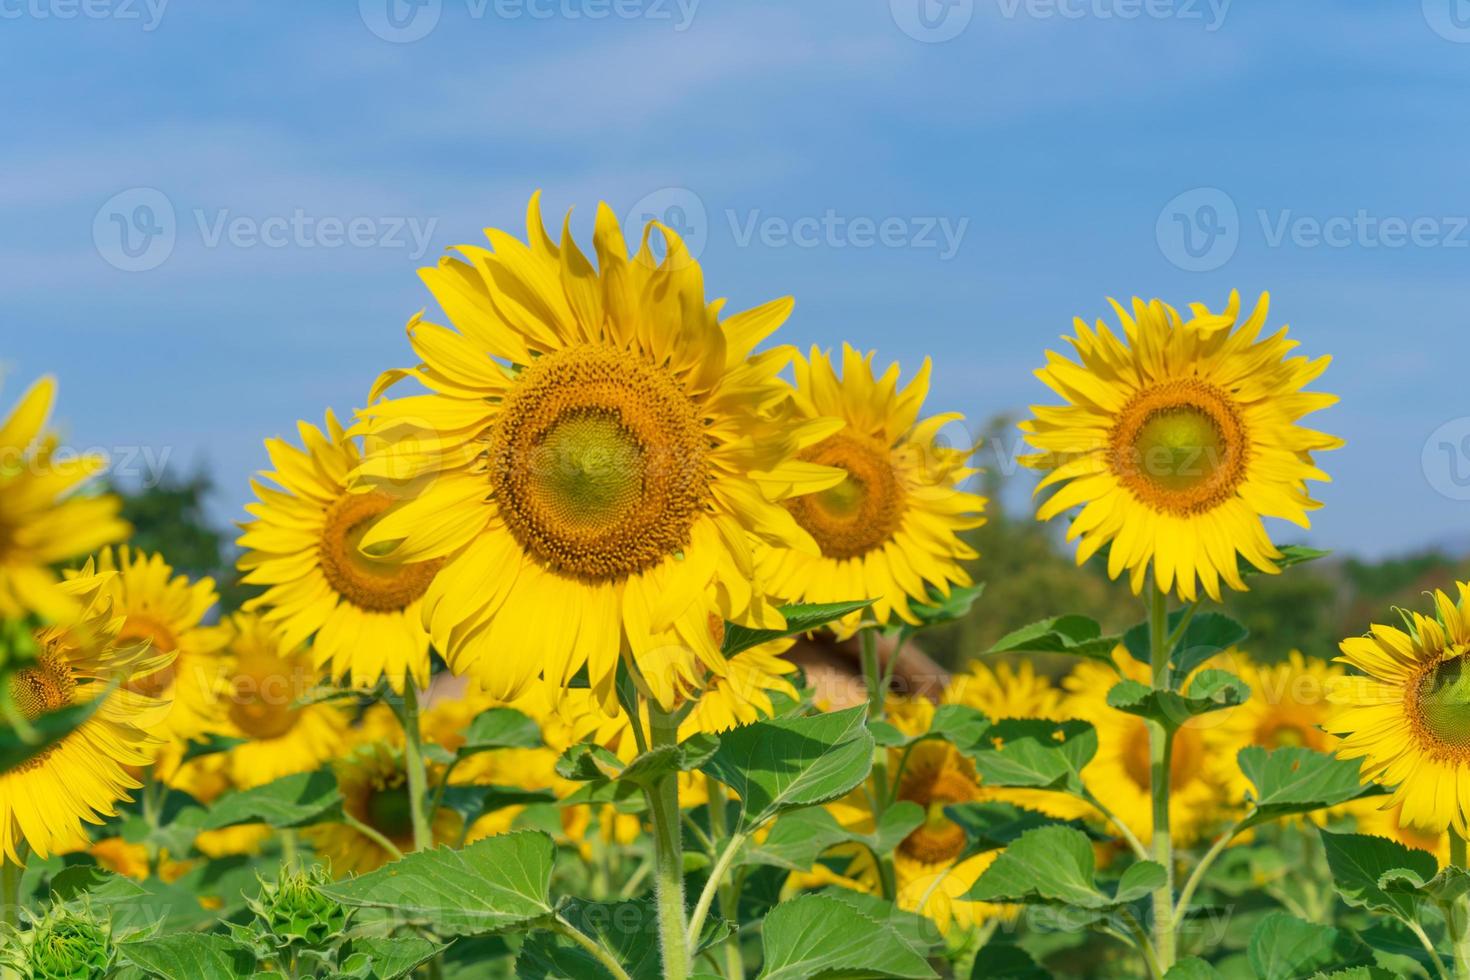 blühende Sonnenblumen auf natürlichem Hintergrund foto